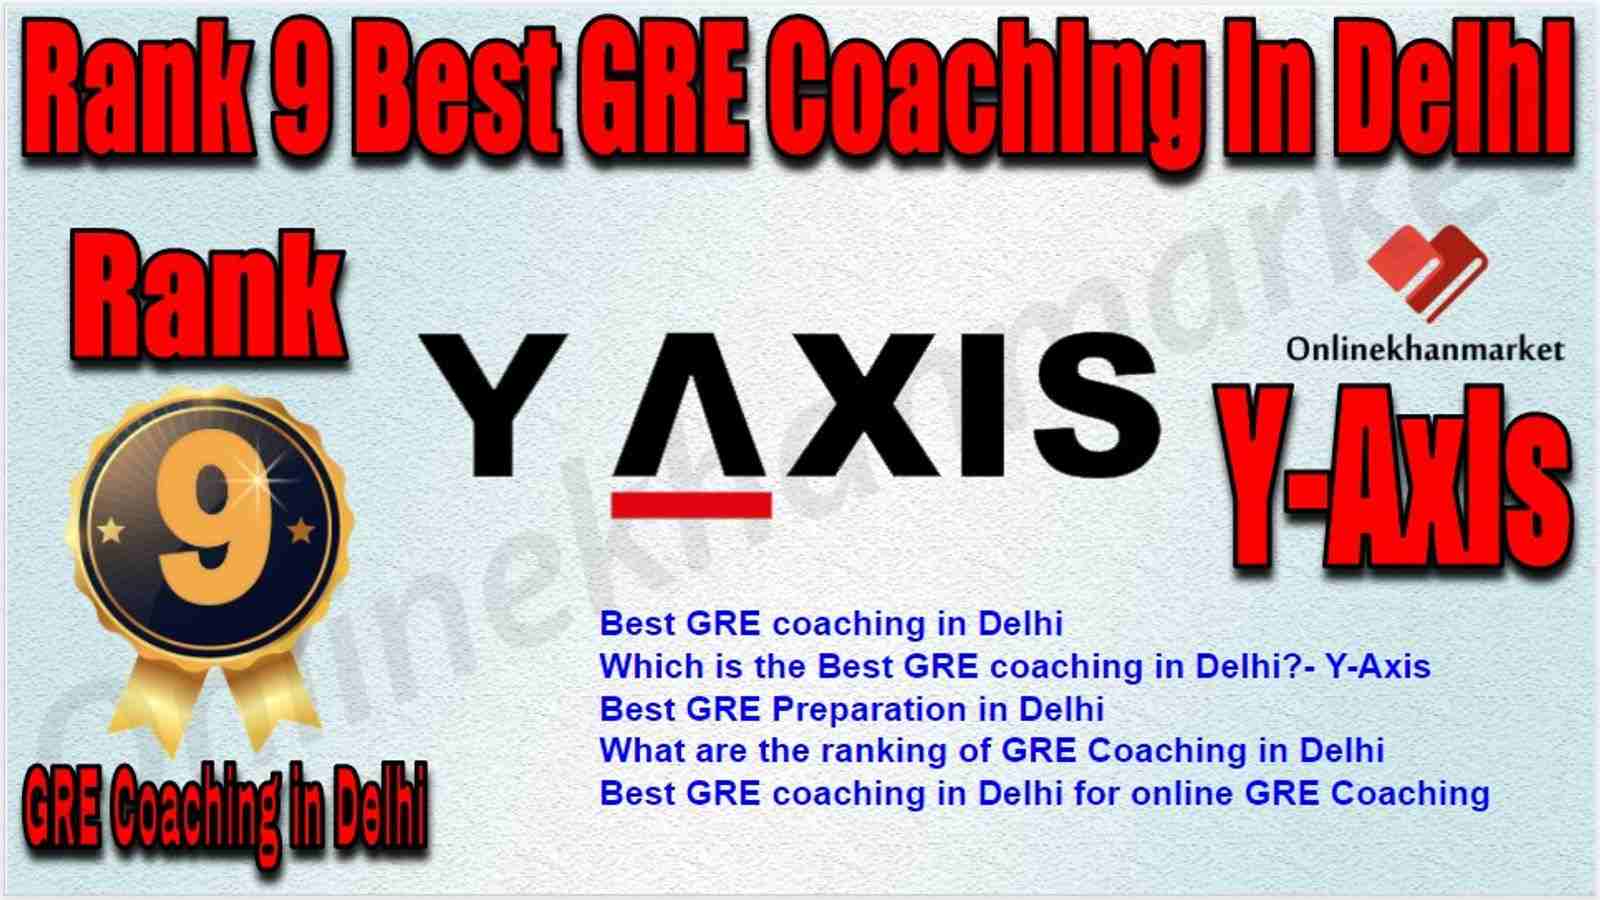 Rank 9 Best GRE Coaching in Delhi